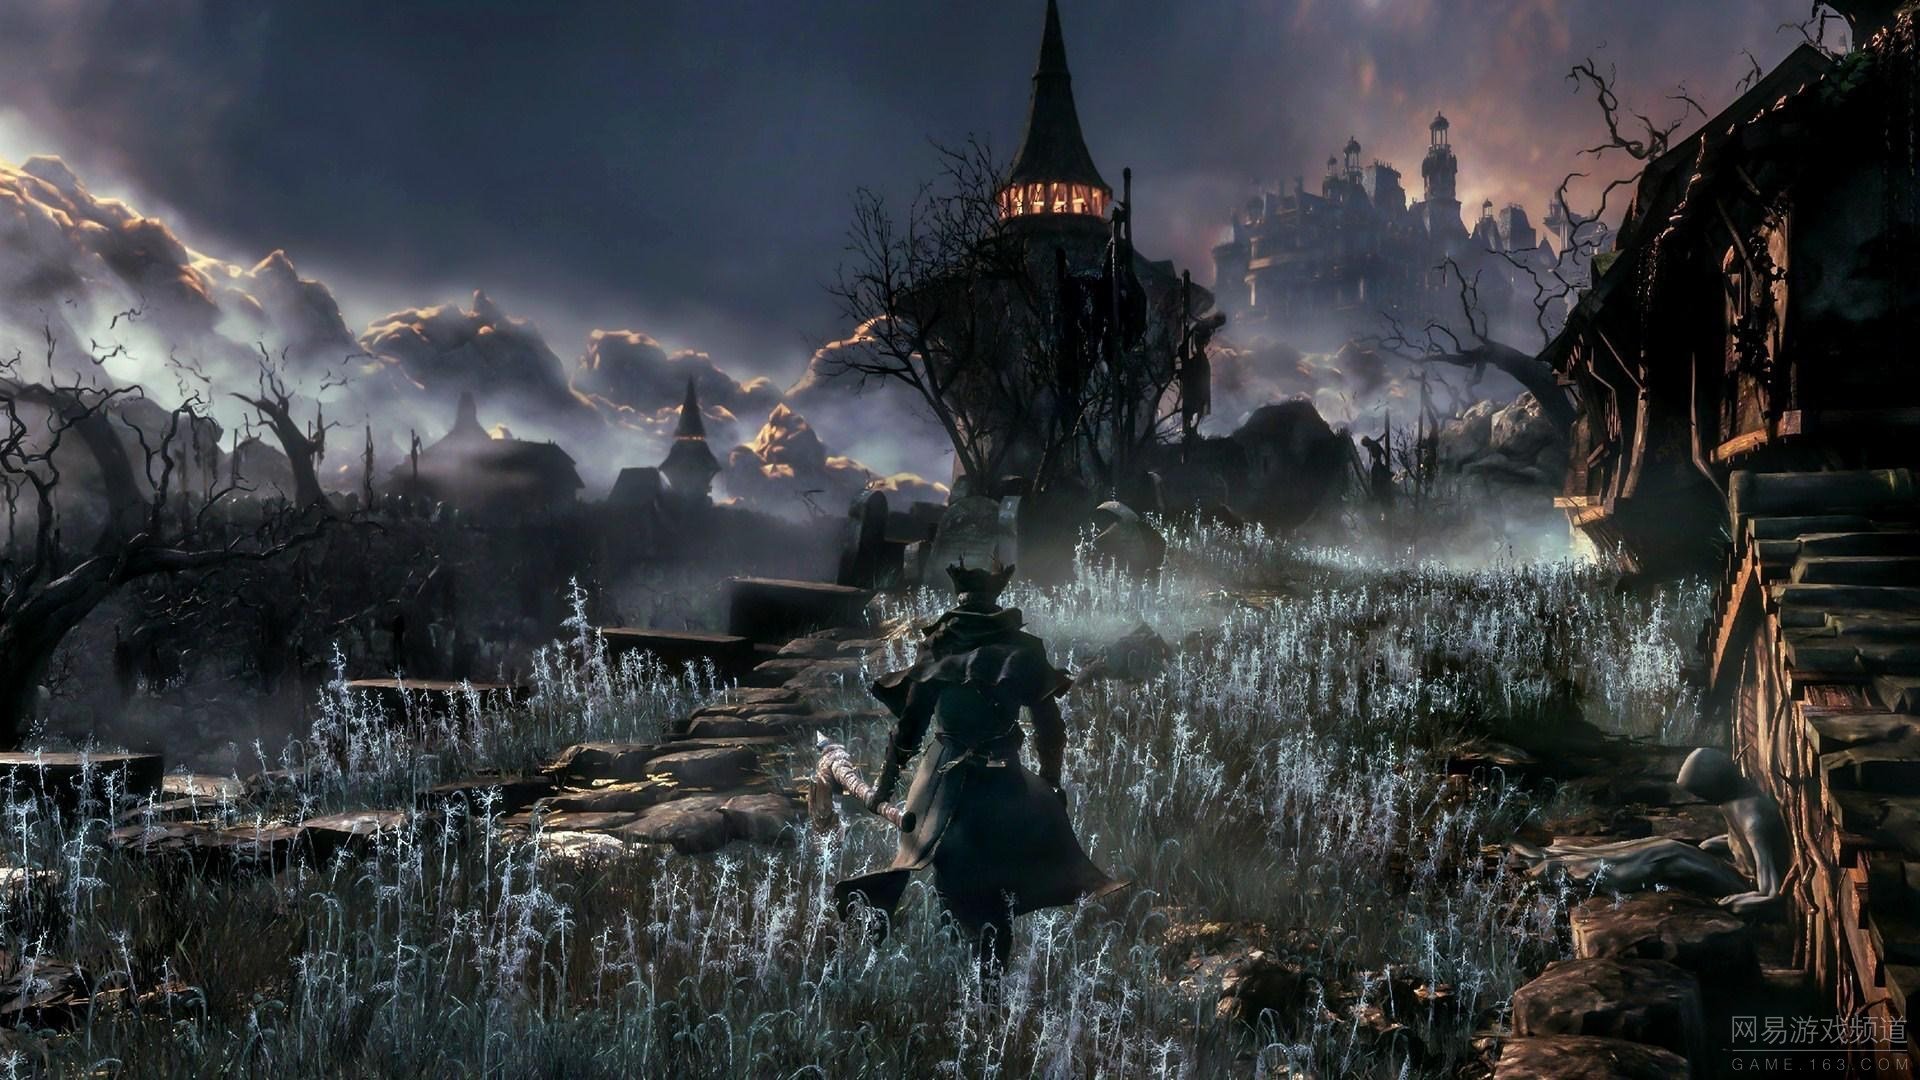 Dark Souls Action Rpg Fighting Warrior Fantasy Wallpaper